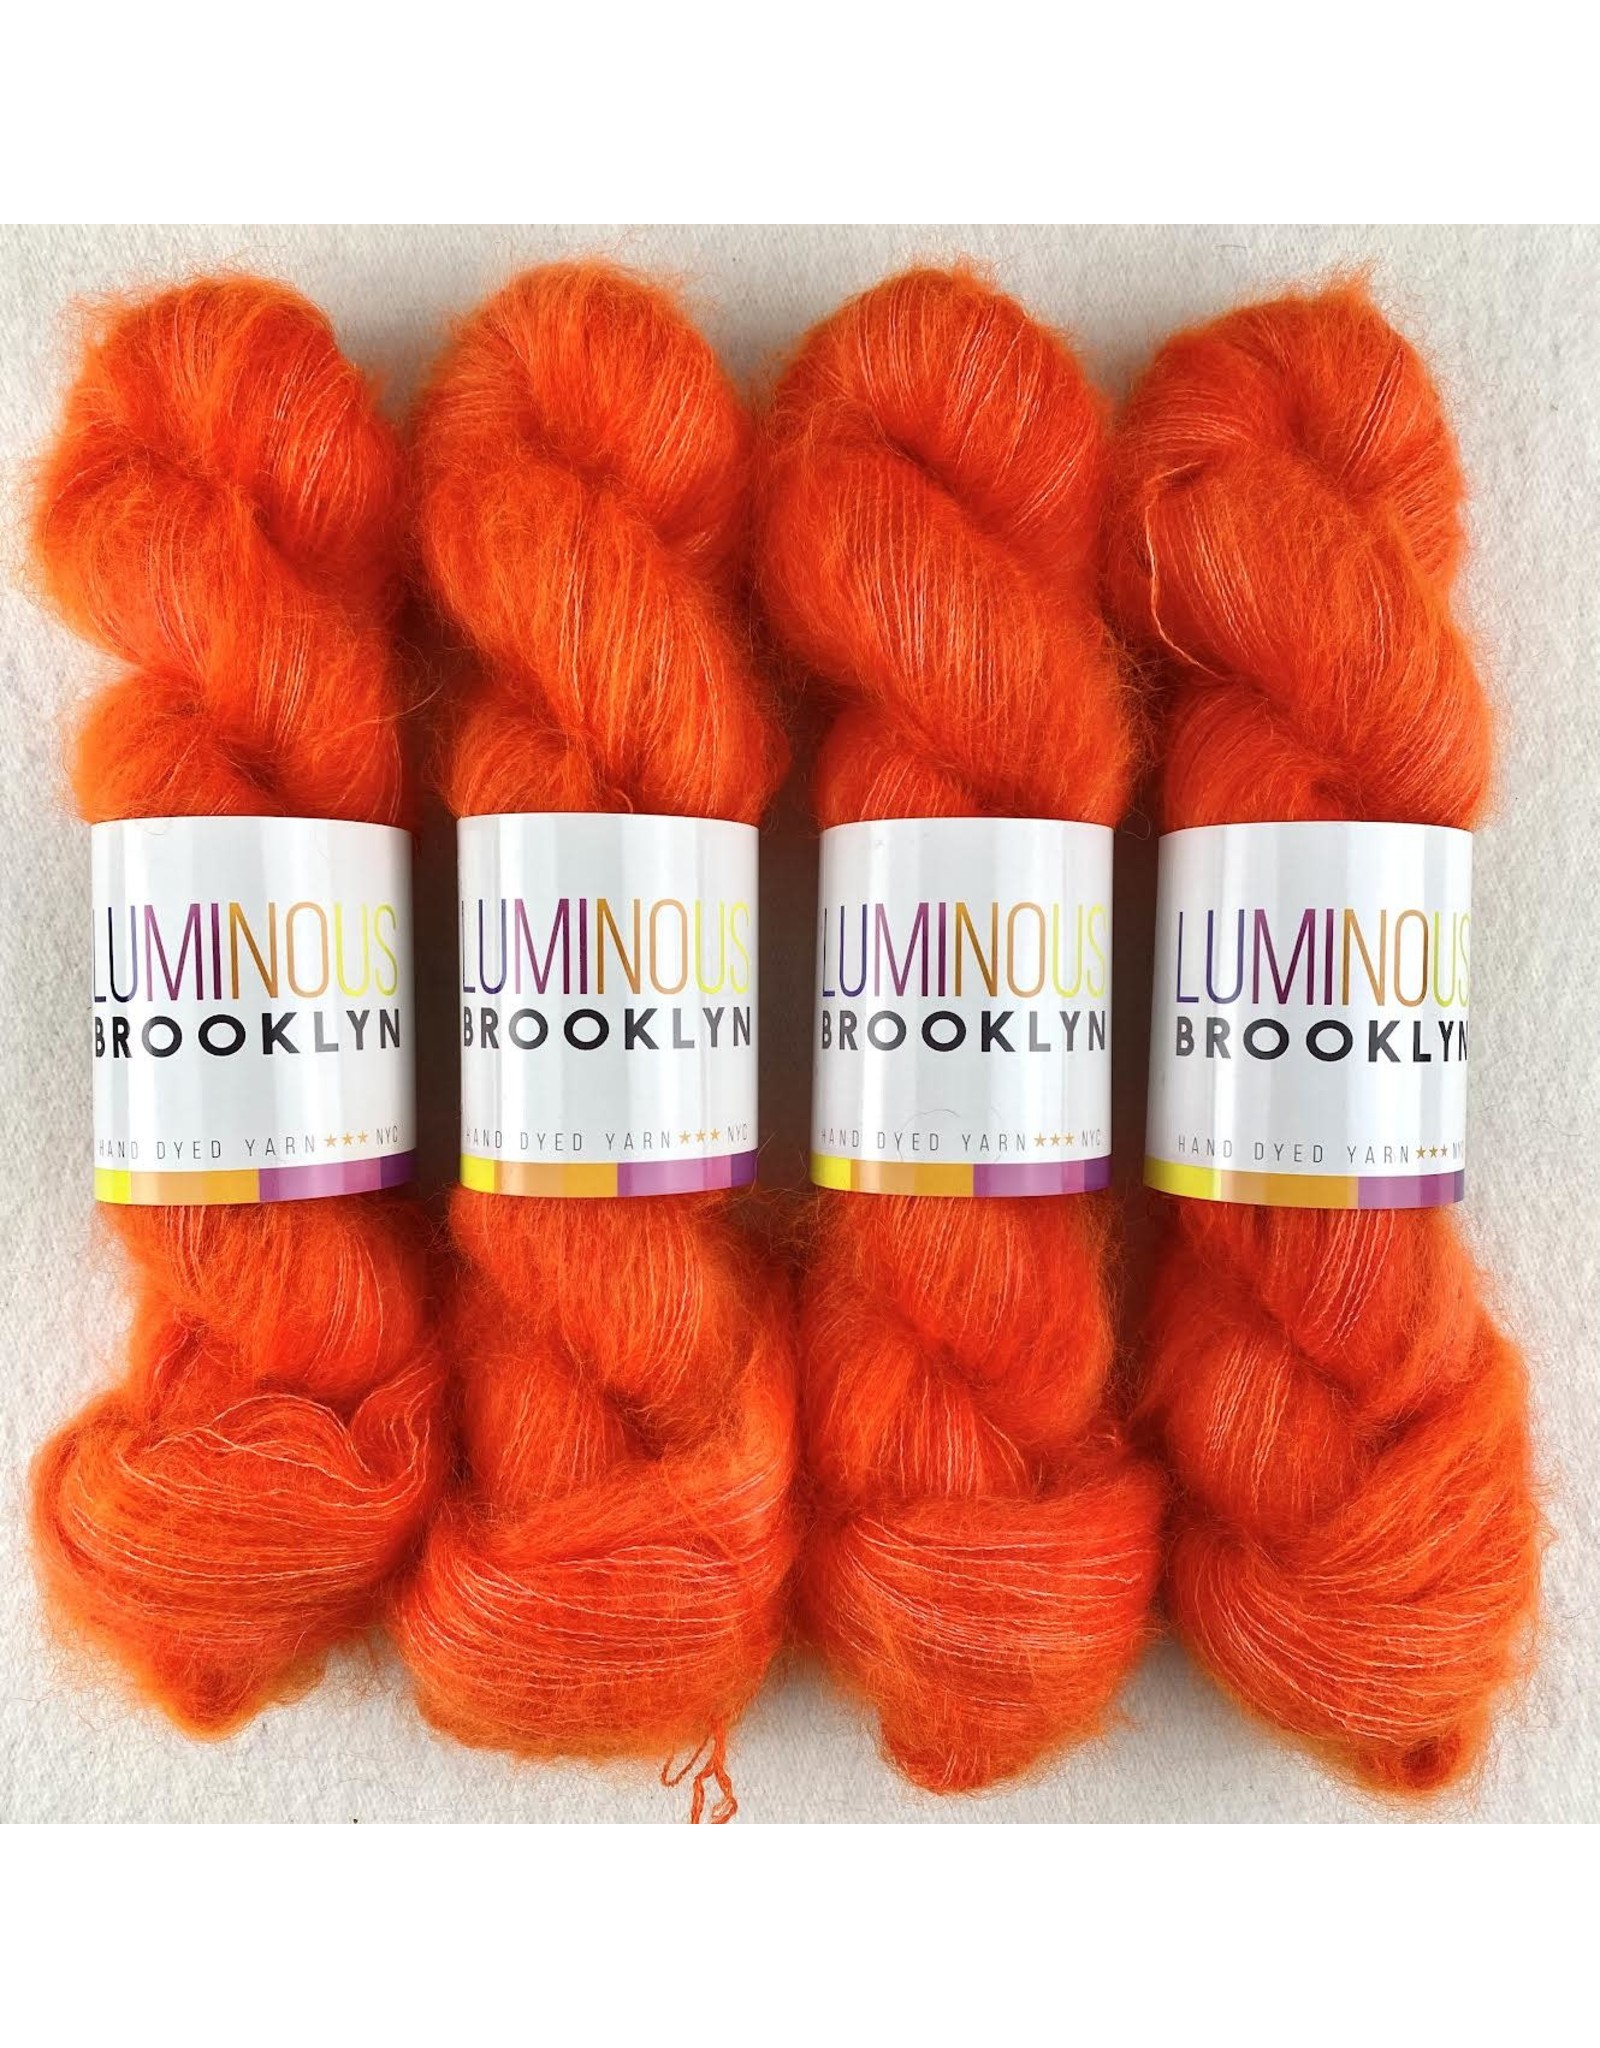 Luminous Brooklyn Lifesaver - Shining Silk Mohair - Luminous Brooklyn